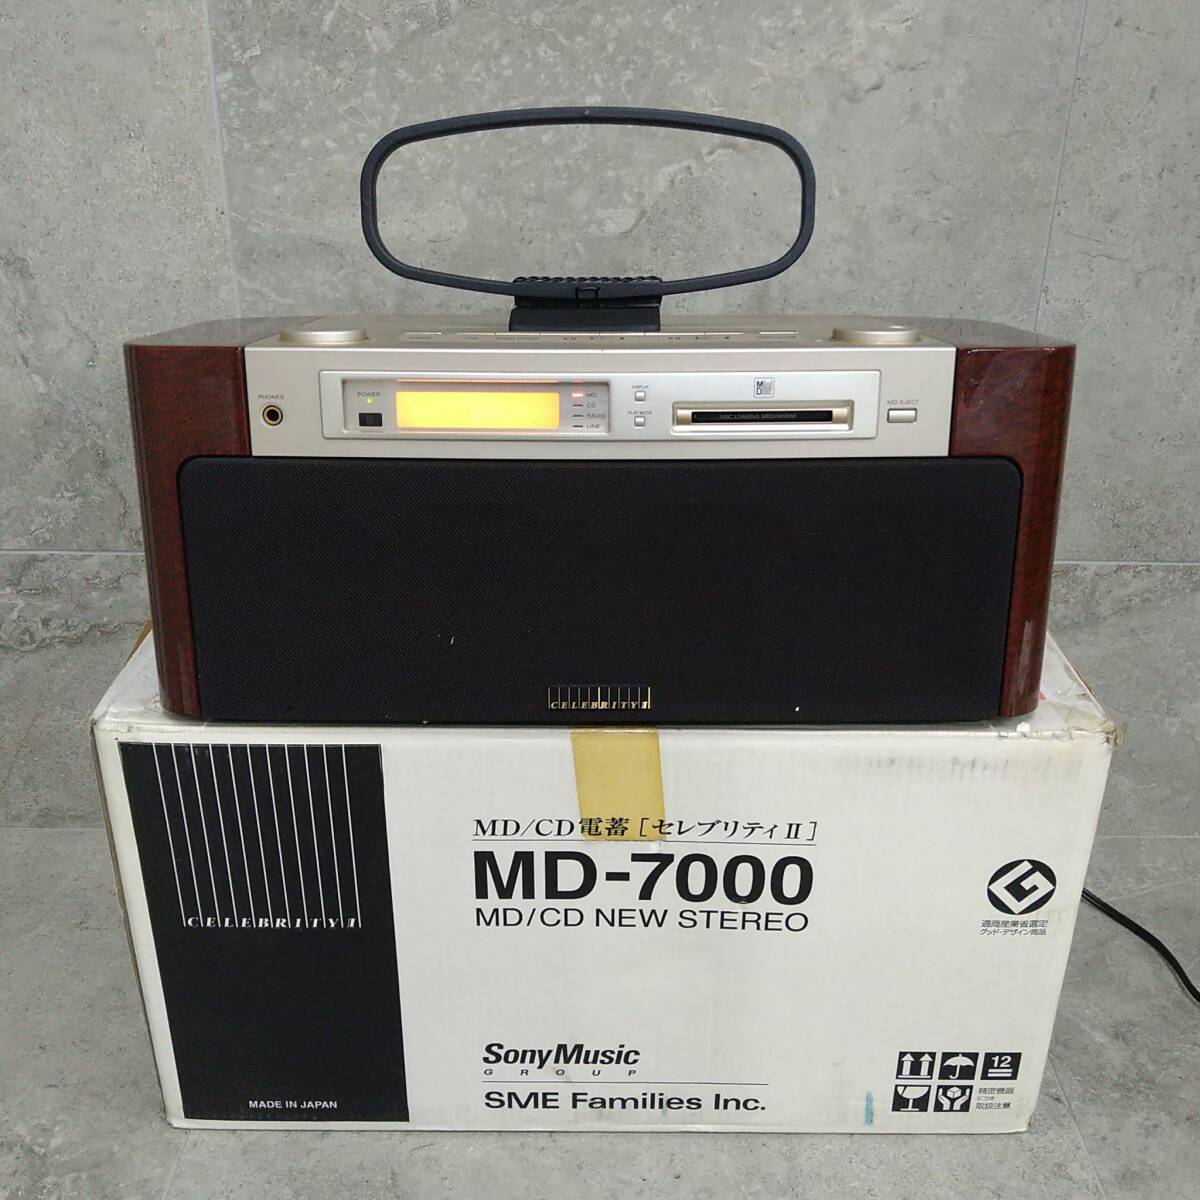 F2466(053)-703/KR3000 SONY MD-7000 MD-CD NEW STEREO Celeb litiⅡ SELEBRITYⅡ audio stereo SonyMusic Sony 